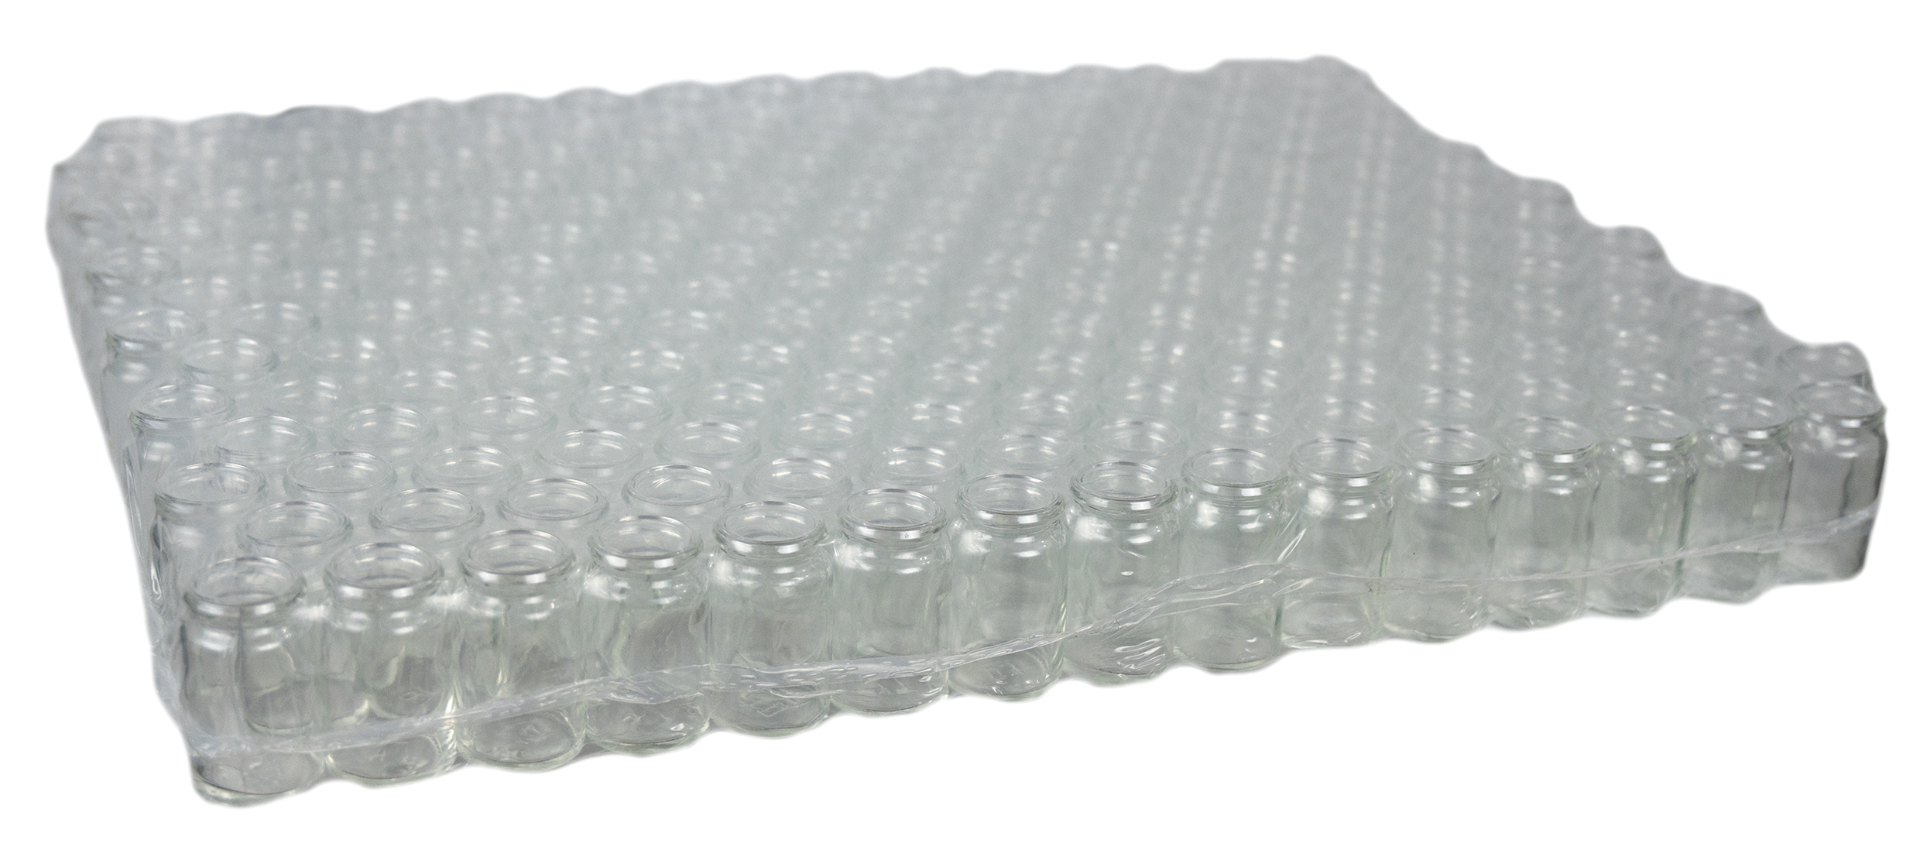 Seau en plastique transparent 20L - Conditionnement en seaux, fûts et cuves  - Naturapi : Tout pour l'apiculteur